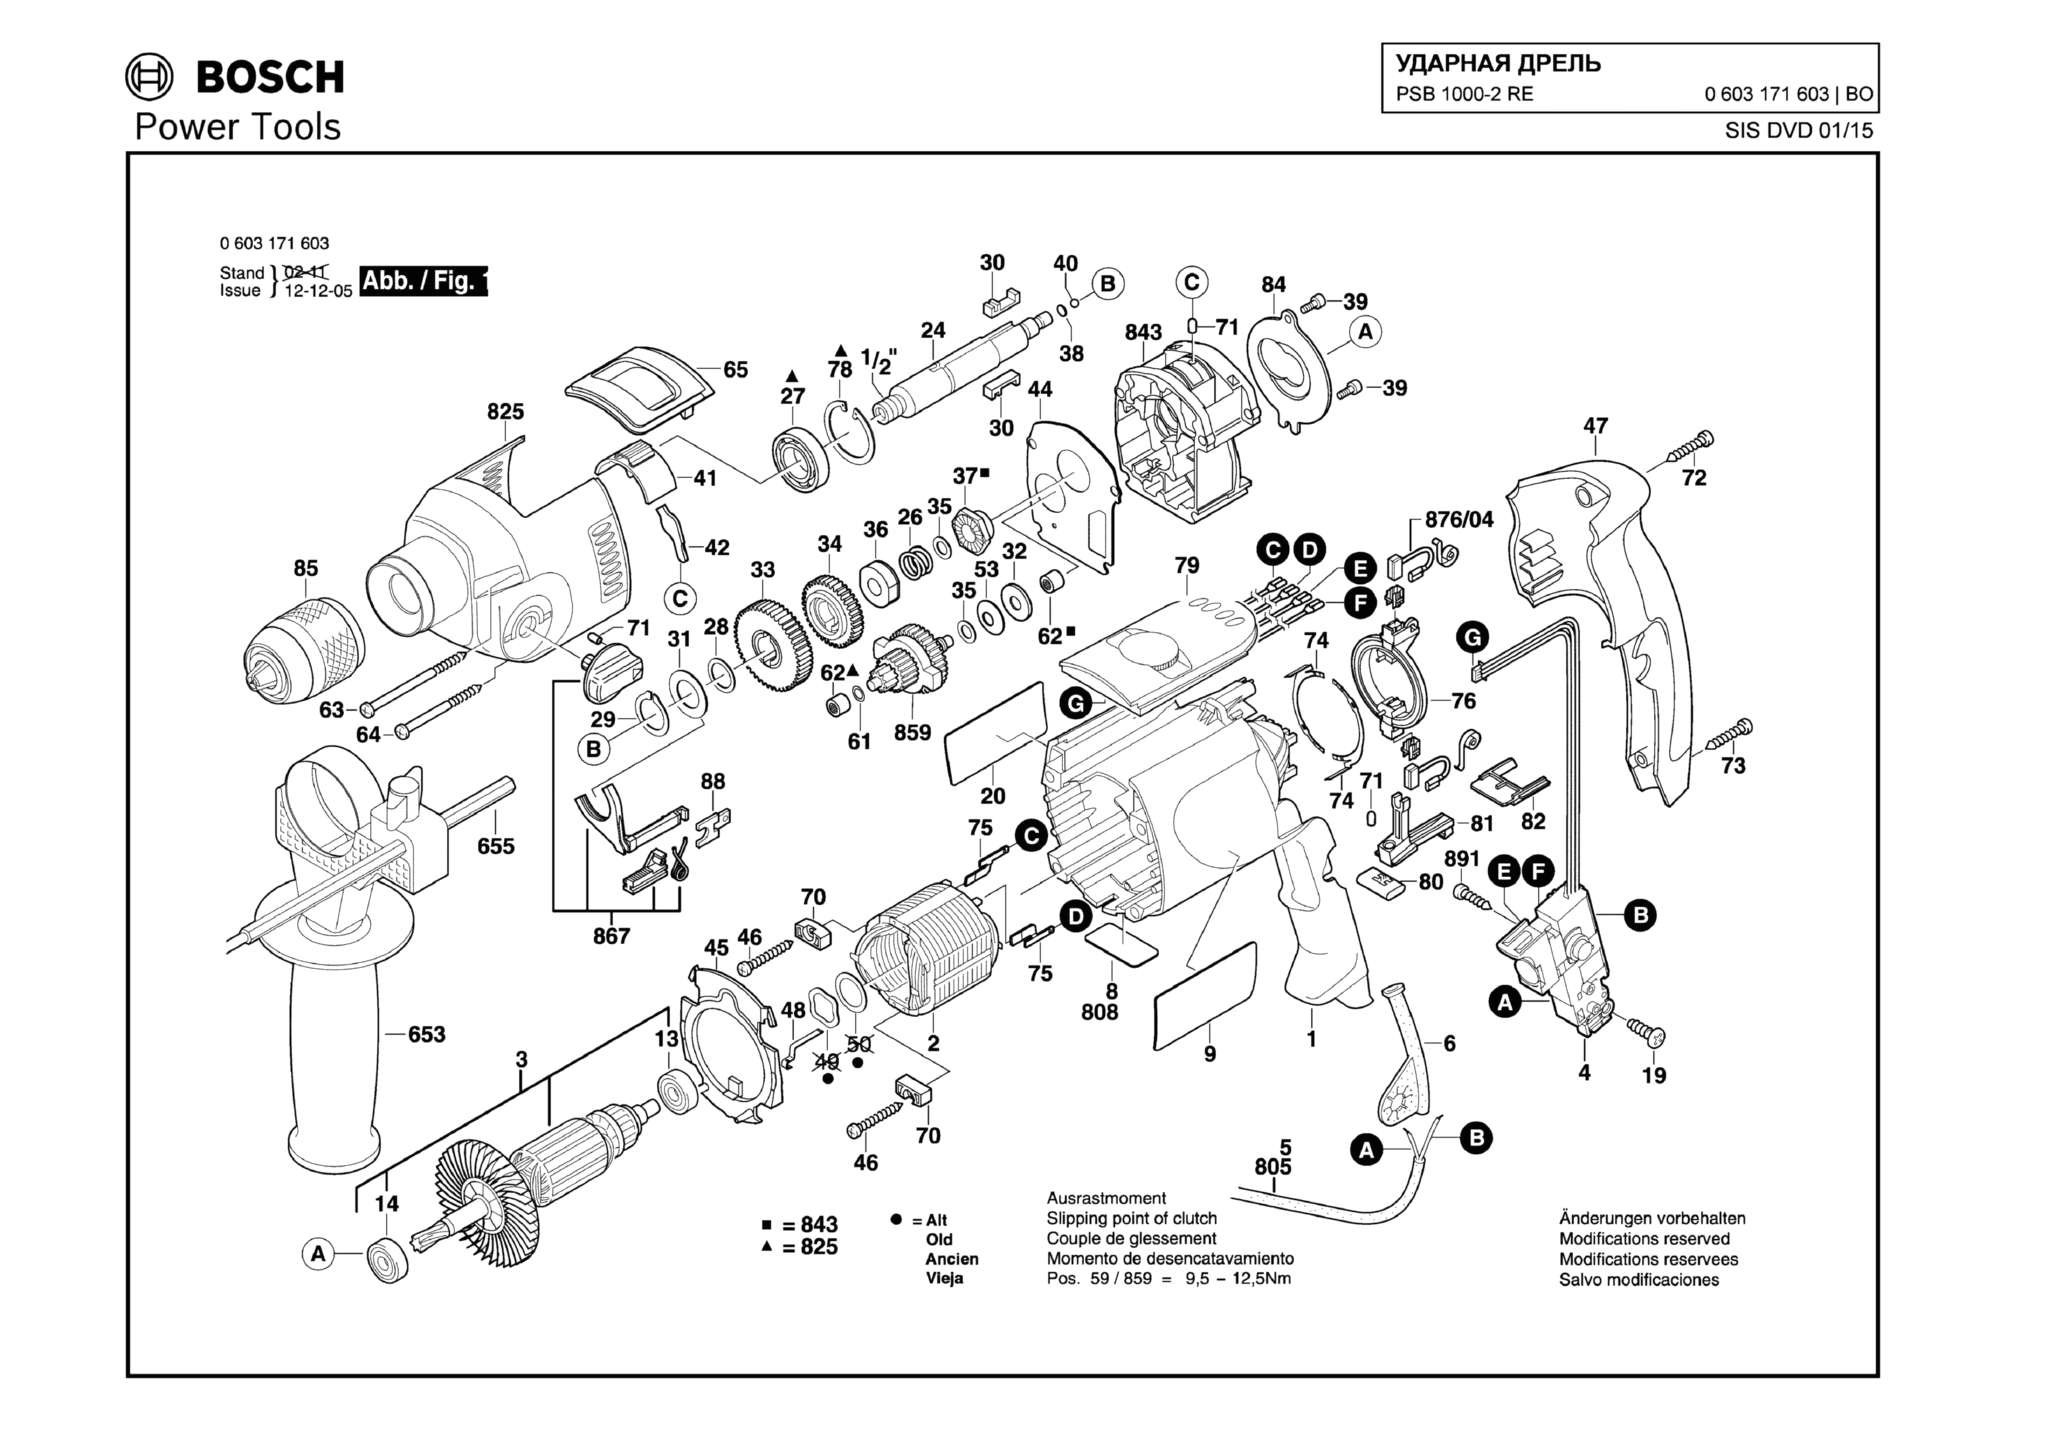 Запчасти, схема и деталировка Bosch PSB 1000-2 RE (ТИП 0603171603)